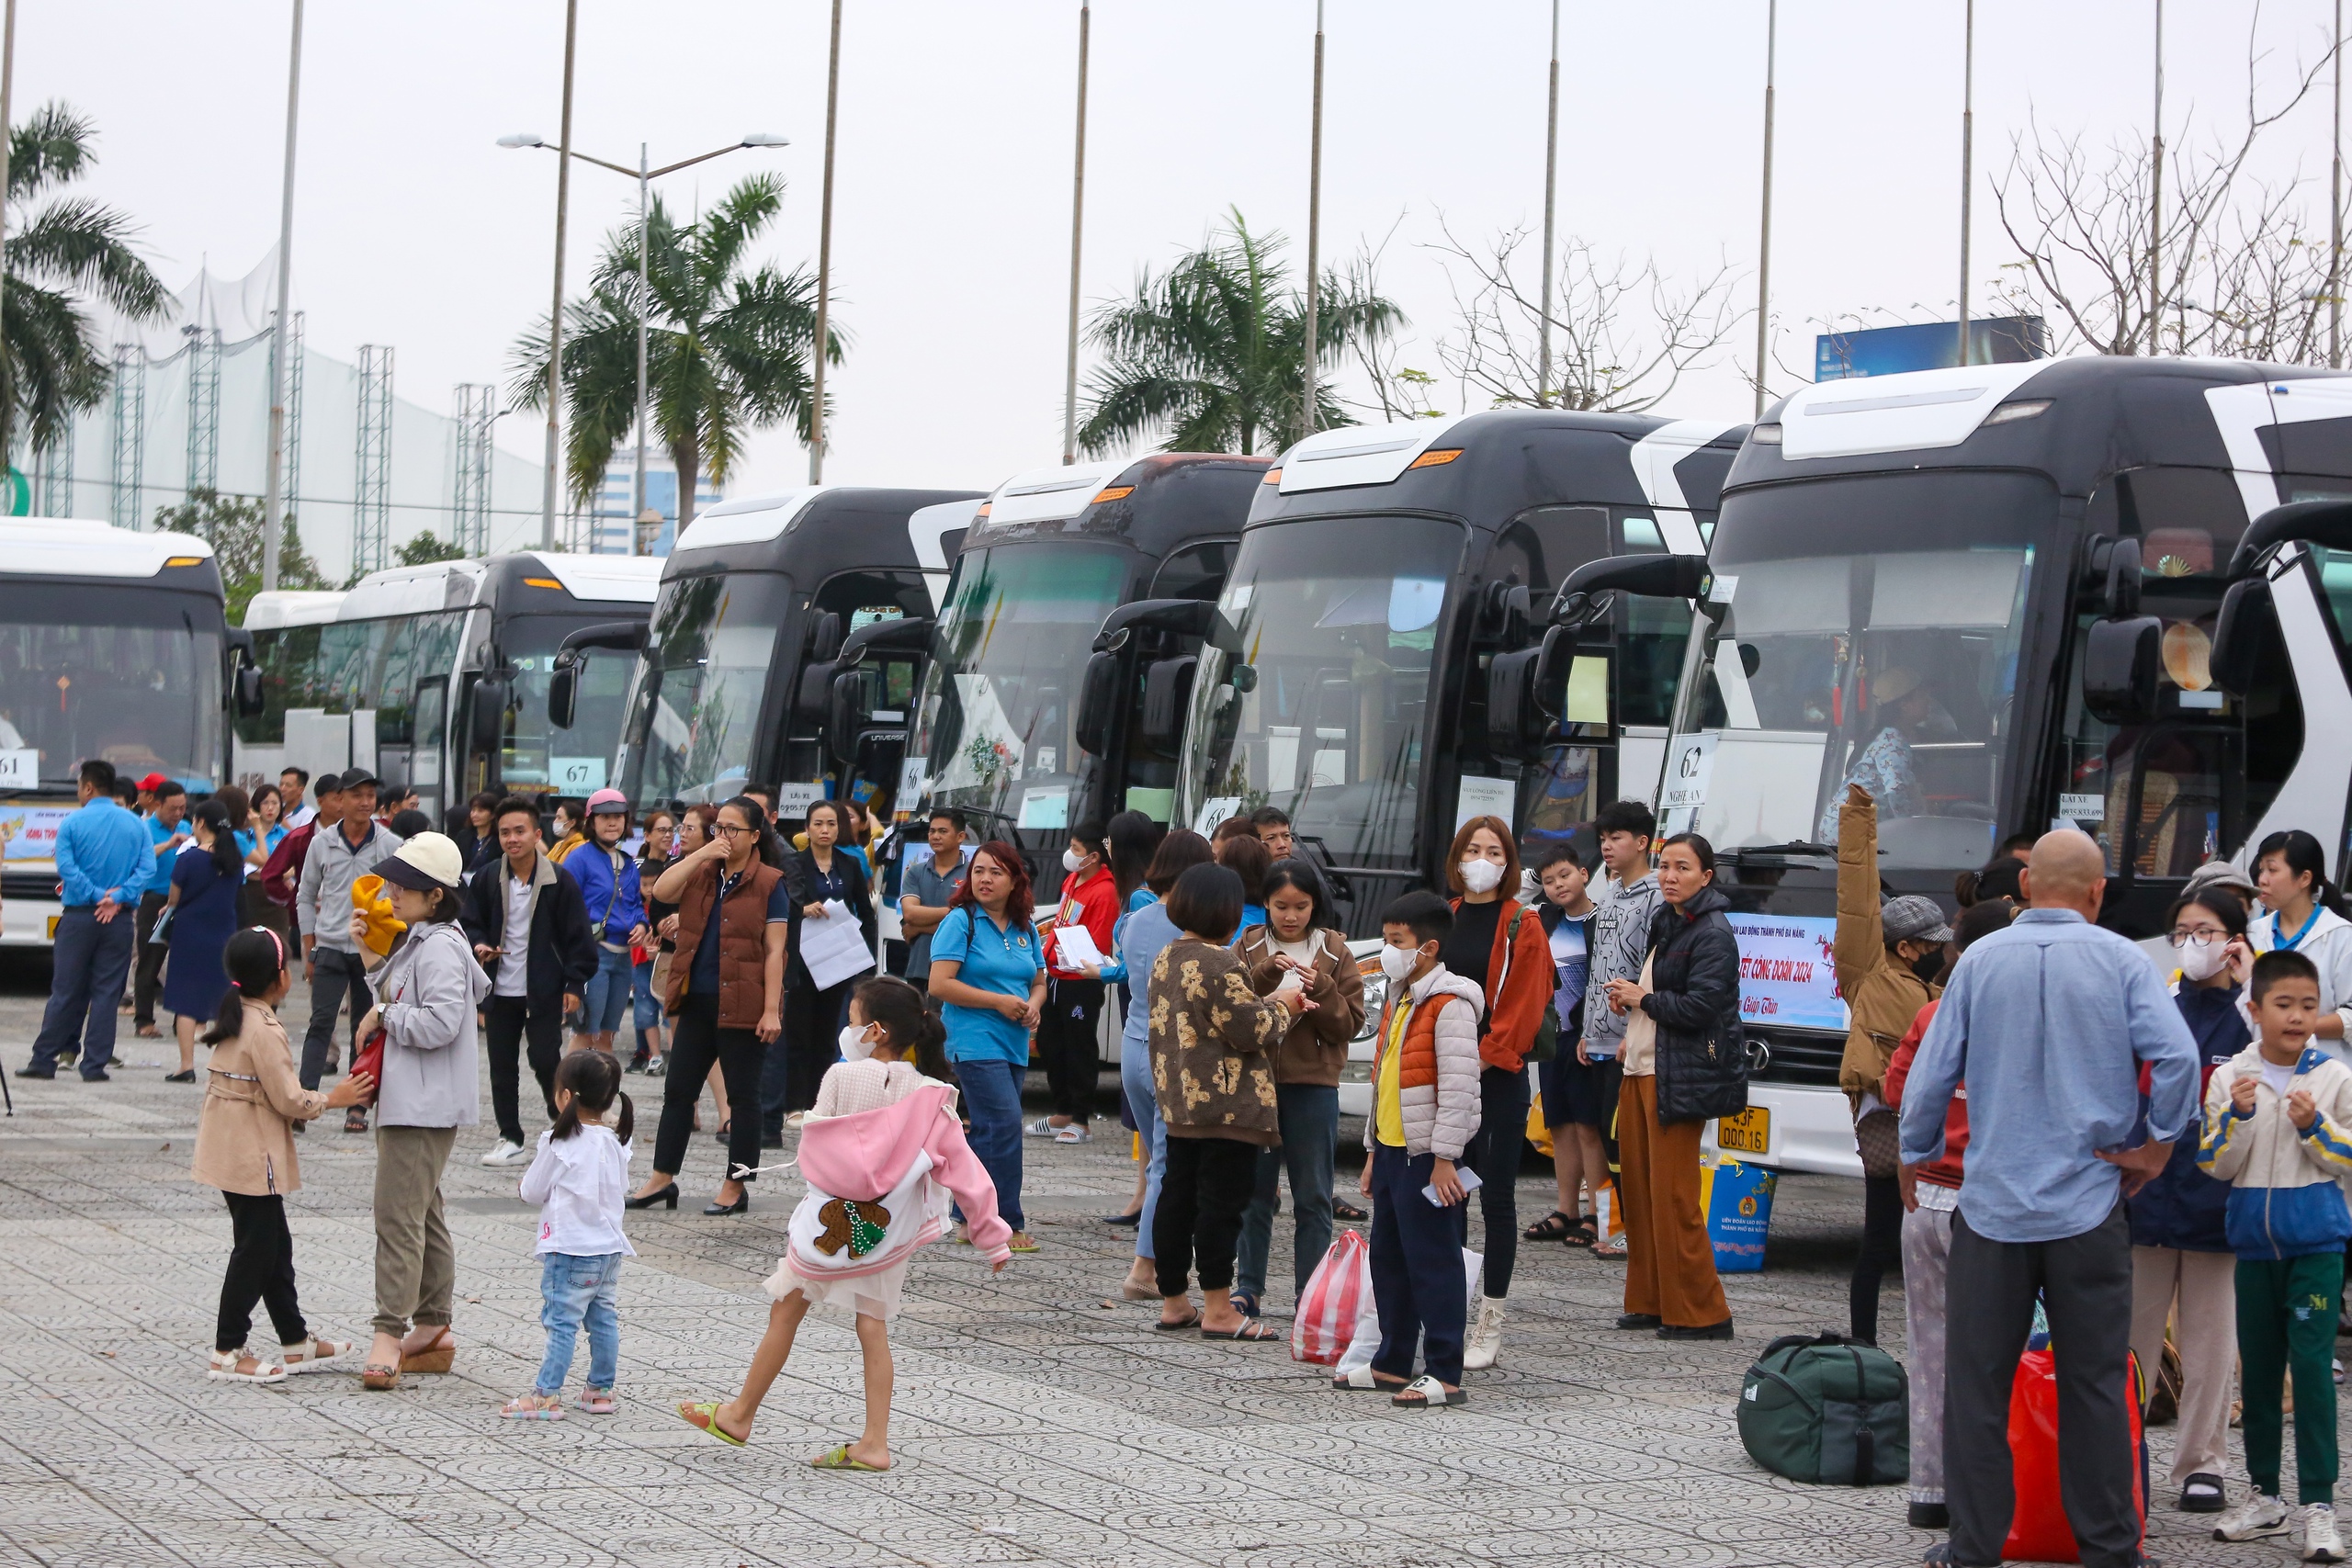 Niềm vui trên những chuyến xe 0 đồng cho hàng ngàn công nhân ở Đà Nẵng: “Tết chỉ trọn vẹn là khi được về nhà” - Ảnh 2.